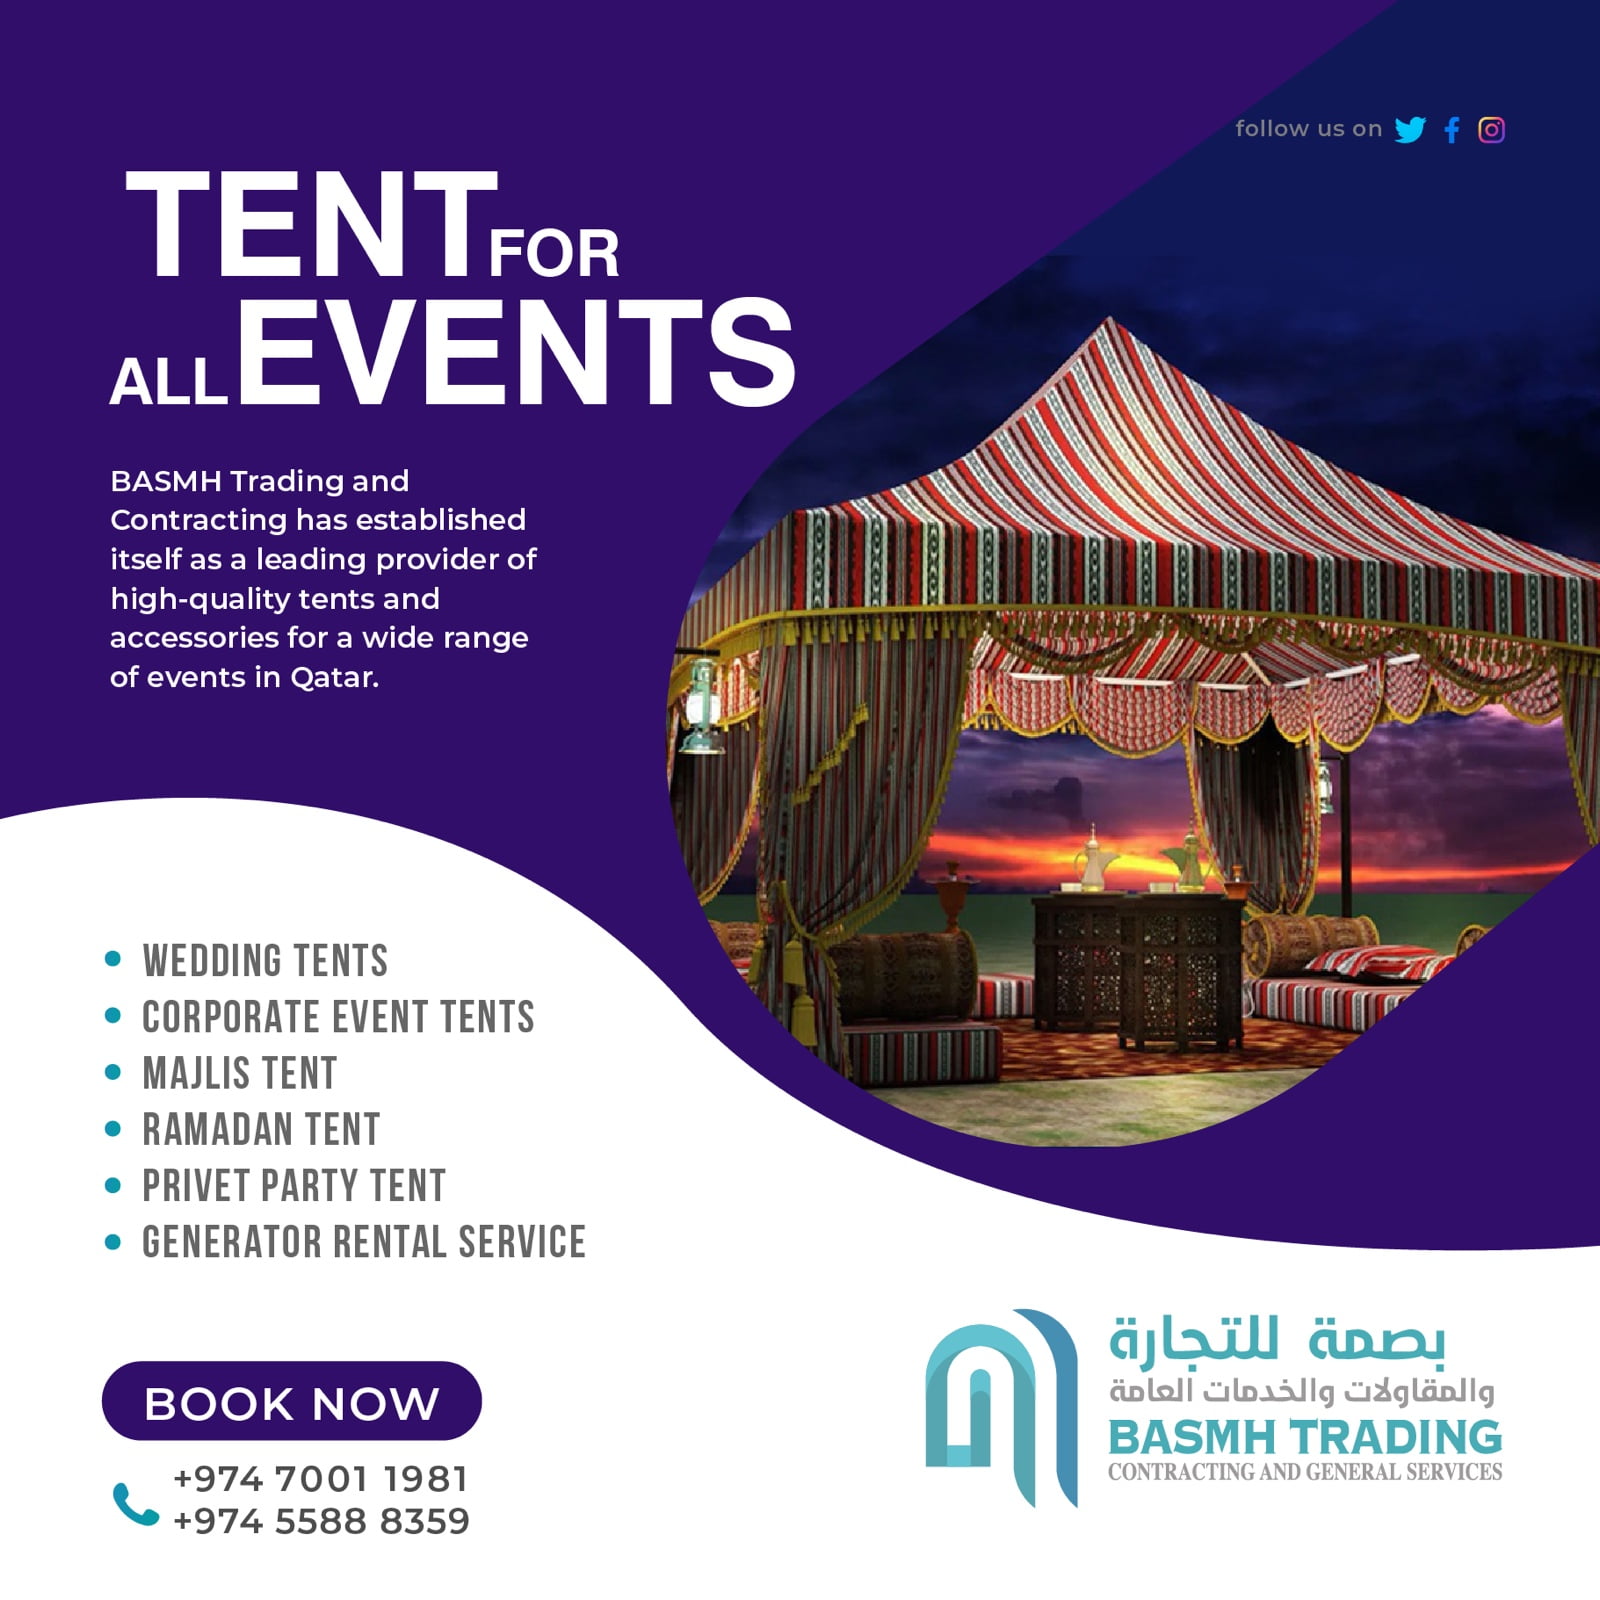 majlis-tent-installation-in-qatar